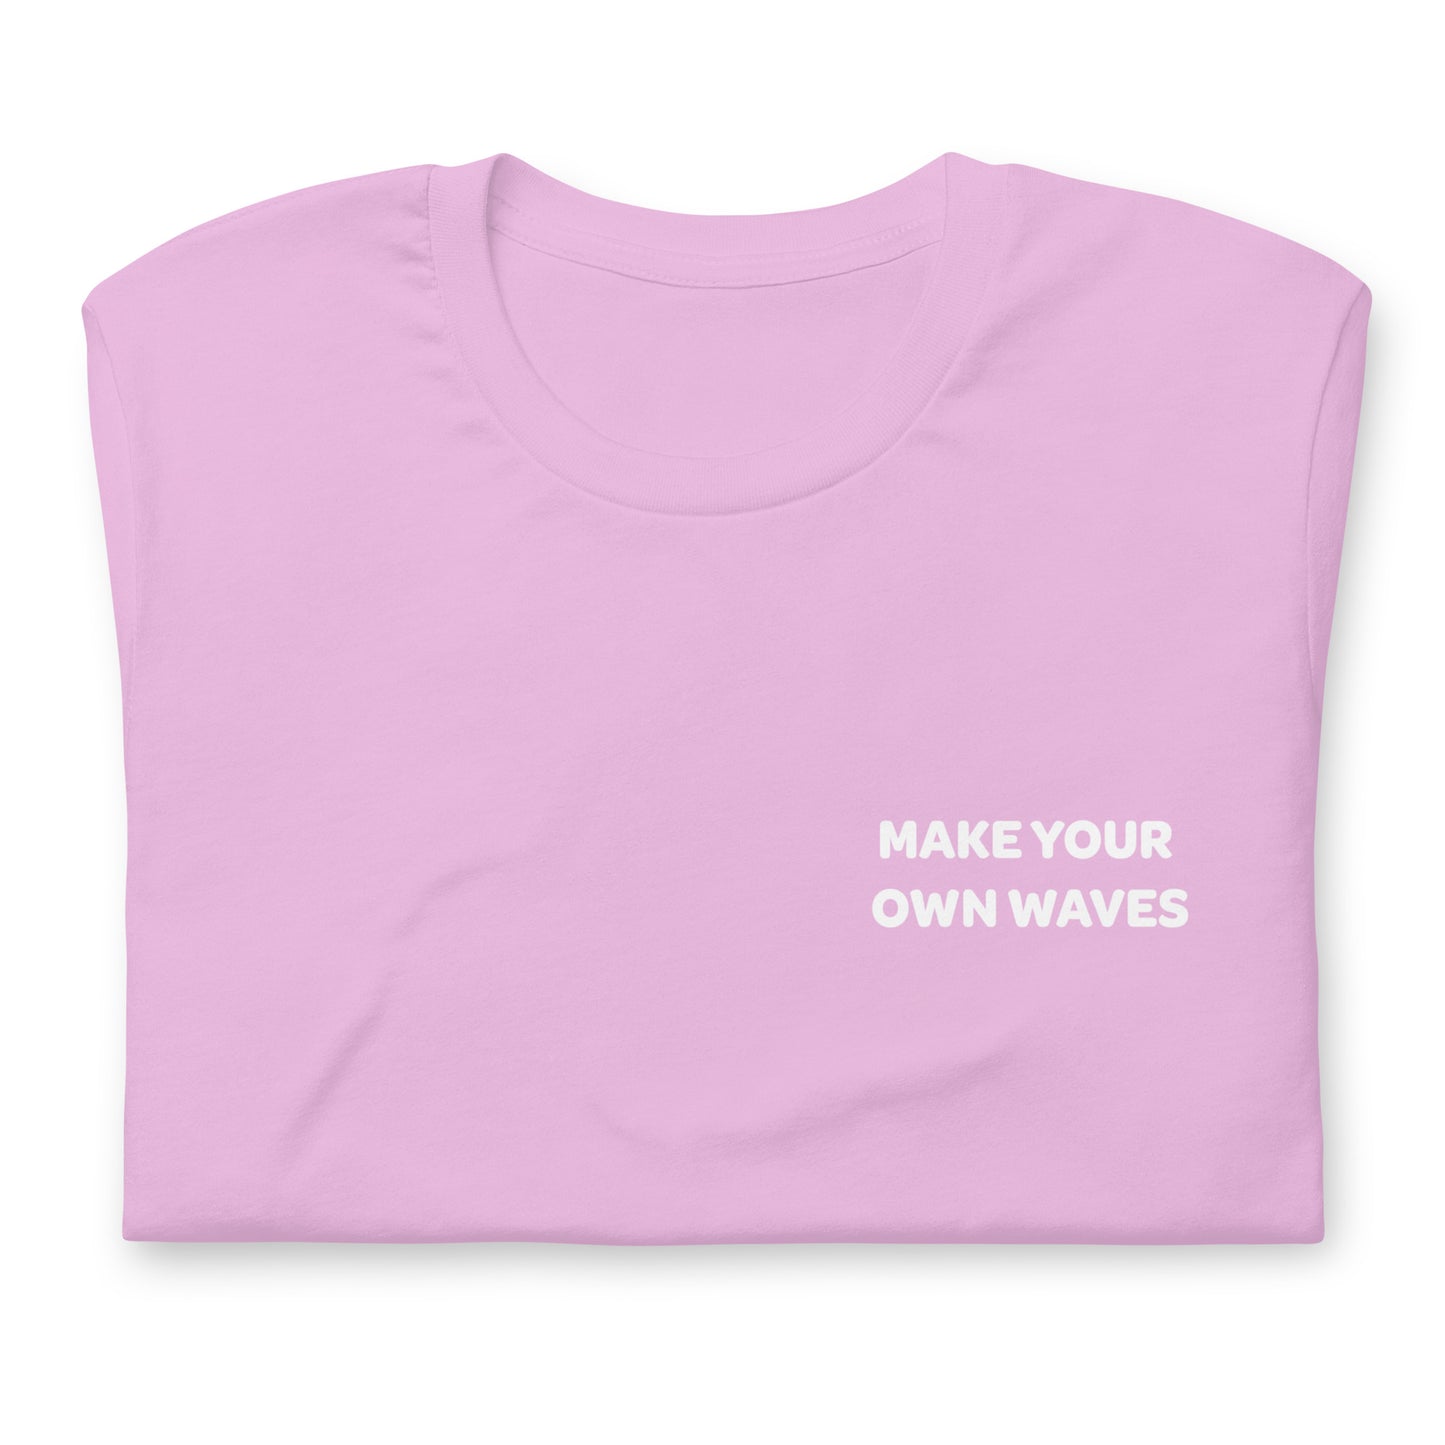 Waves - Unisex t-shirt